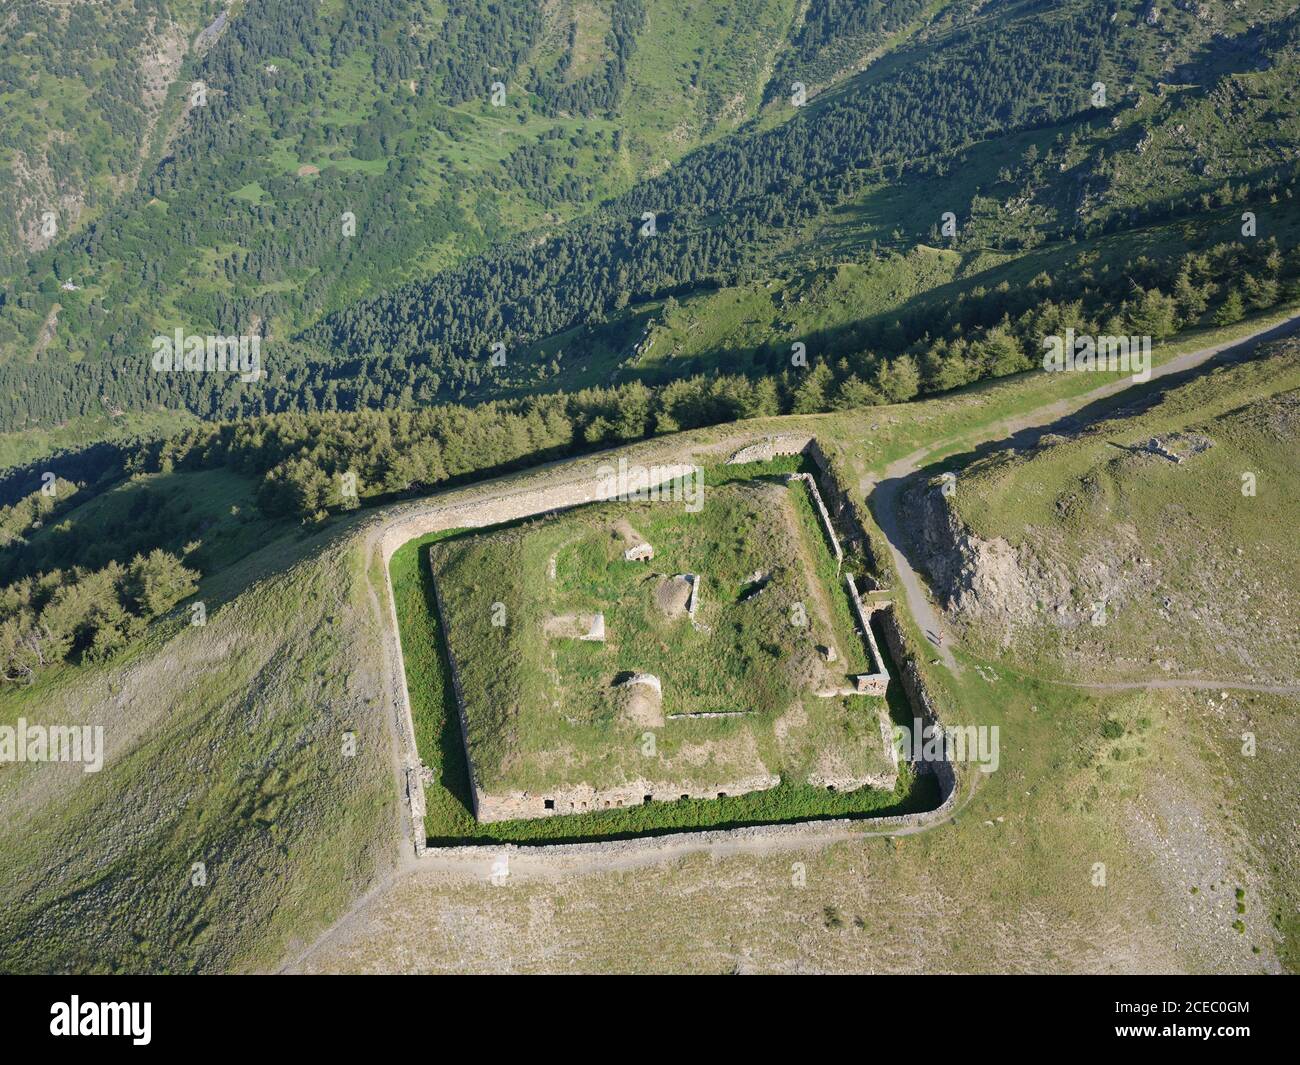 VUE AÉRIENNE.Fort Tabourde, une ancienne fortification militaire près du Col de Tende.Tende, Alpes-Maritimes, France. Banque D'Images